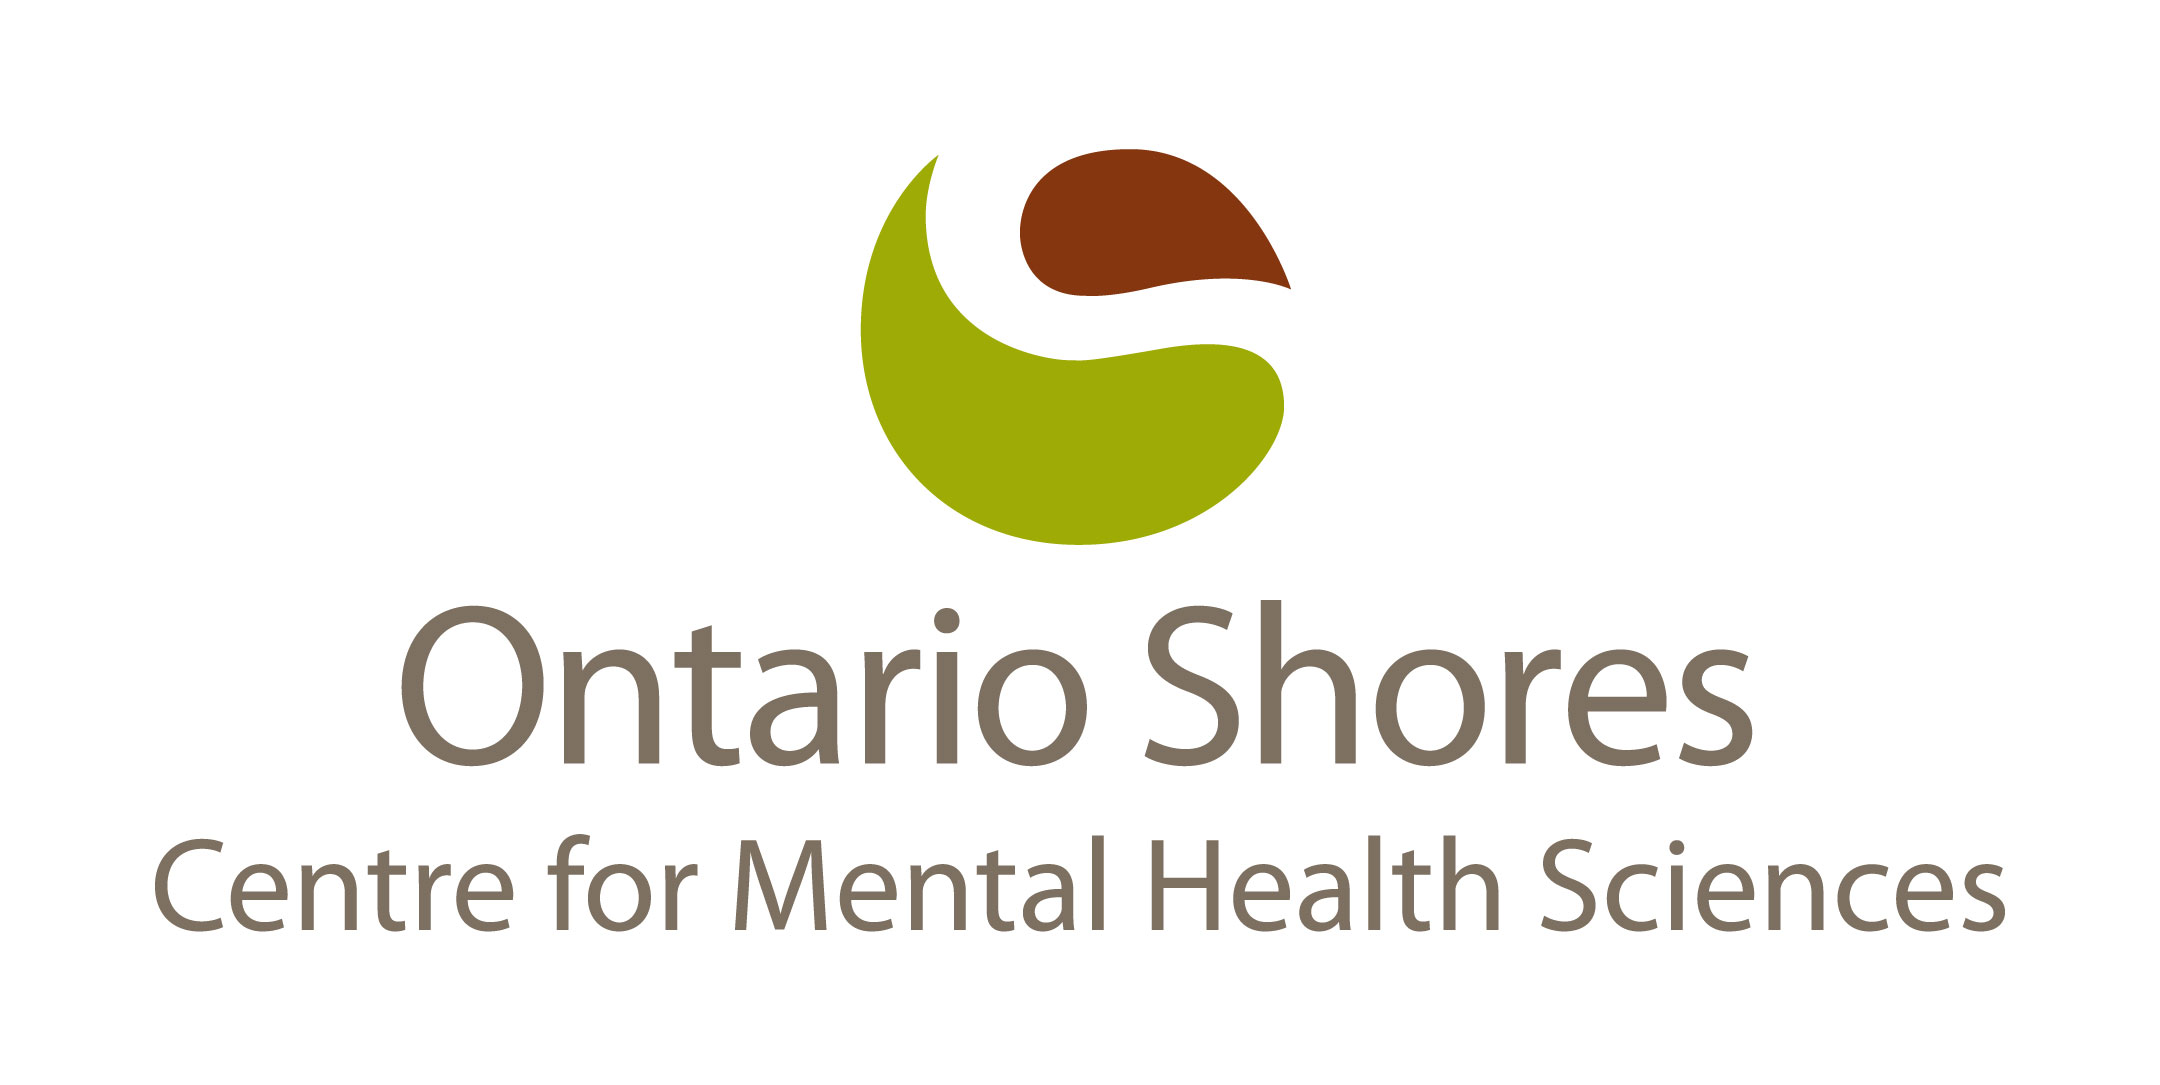 Ontario Shores logo